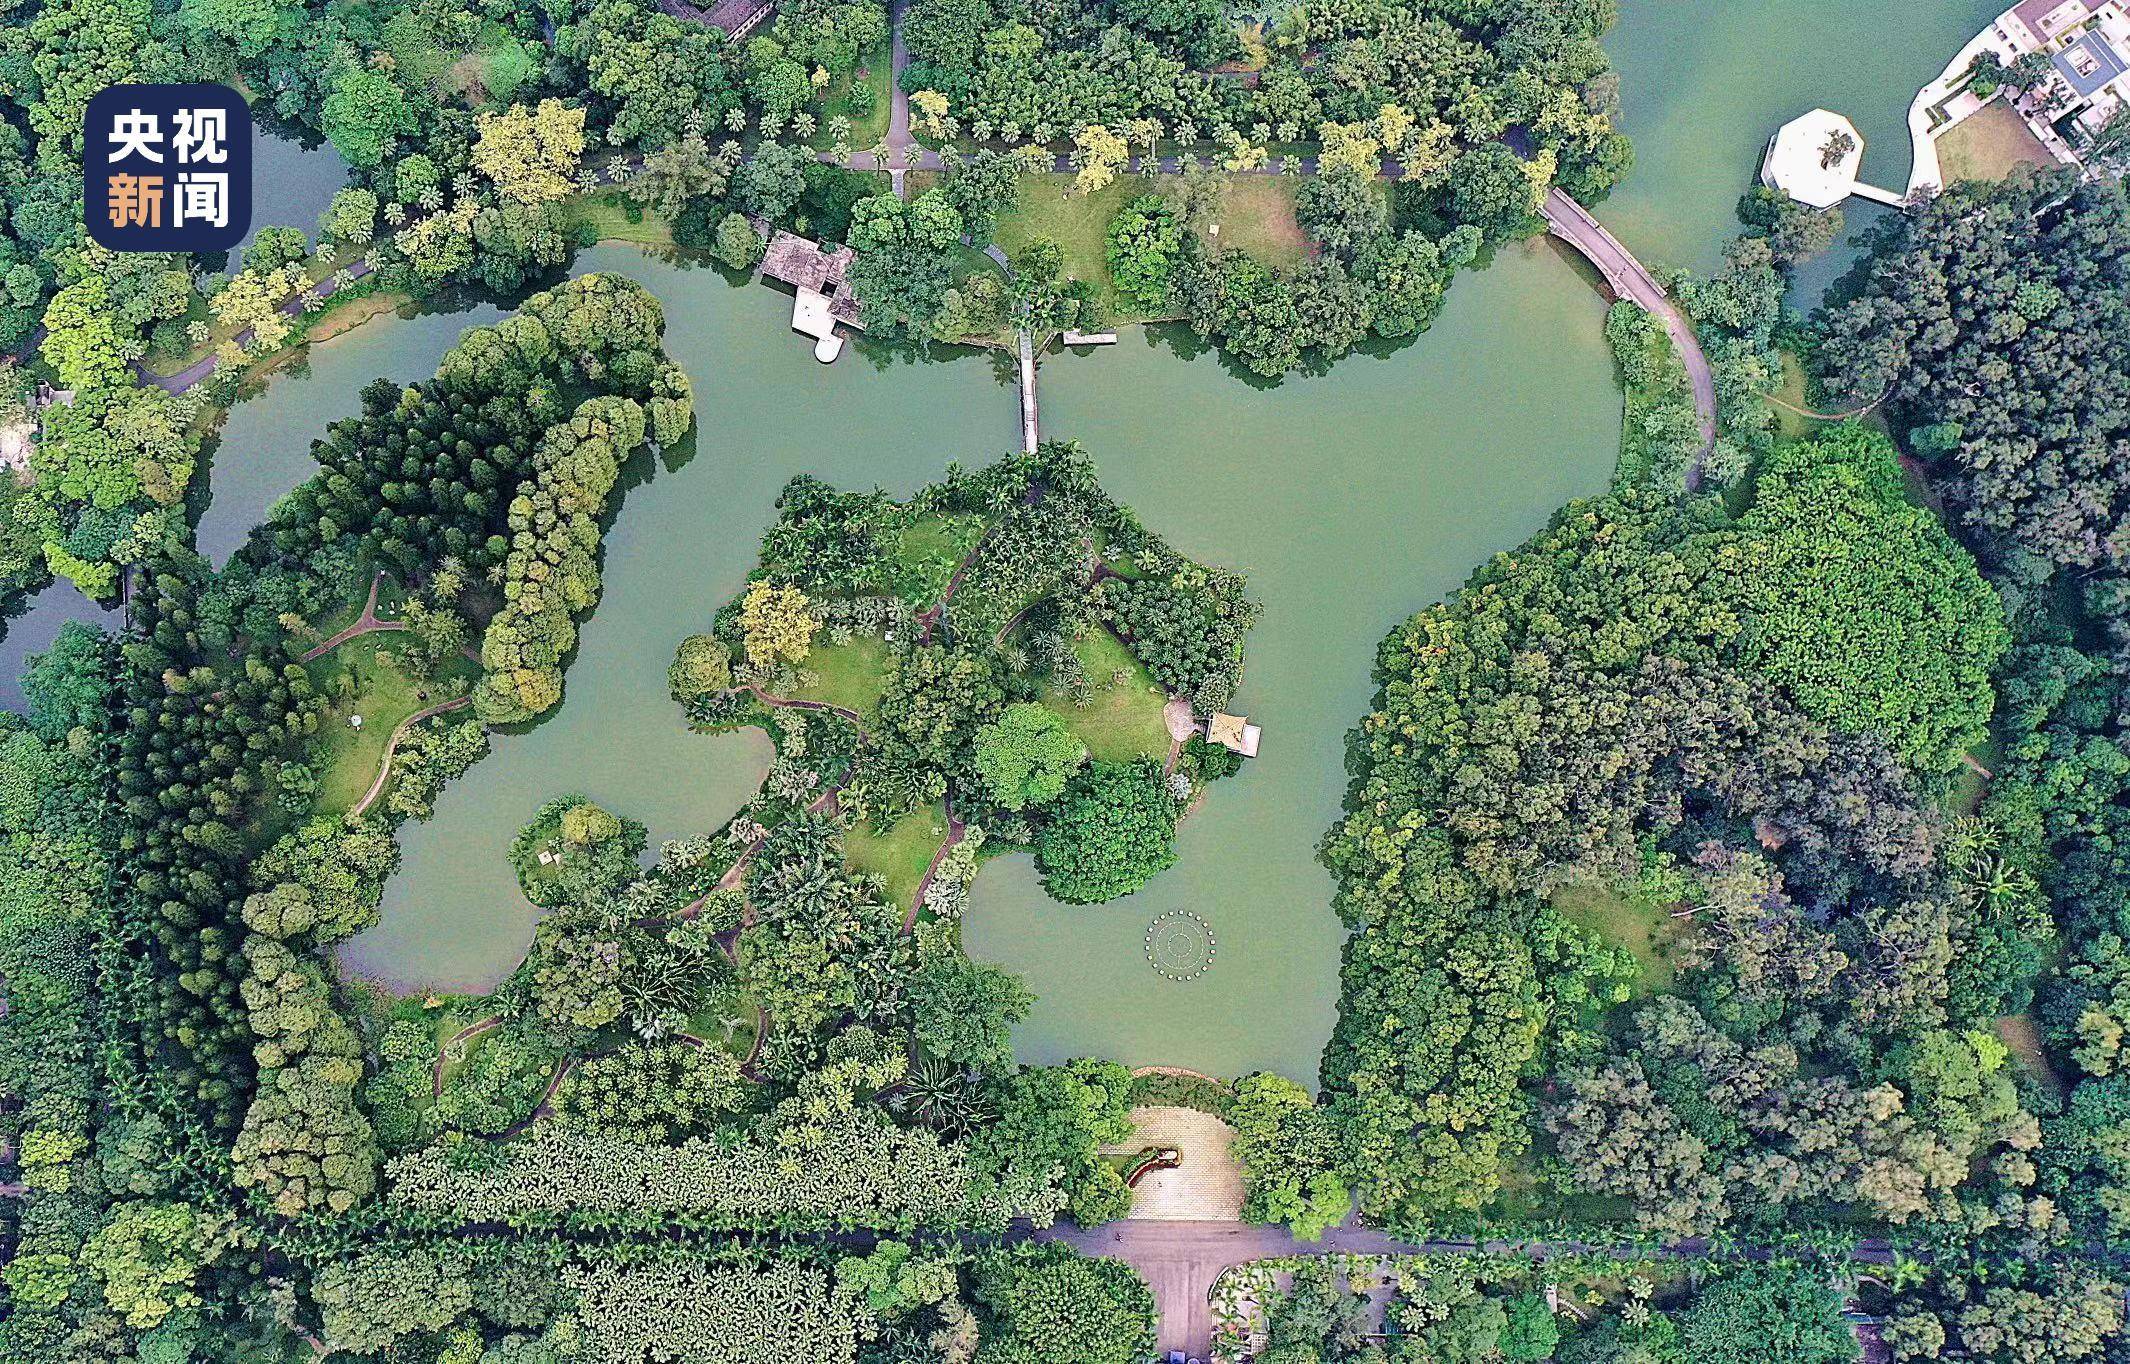 上海植物园导游图,上海植物园地图高清 - 伤感说说吧